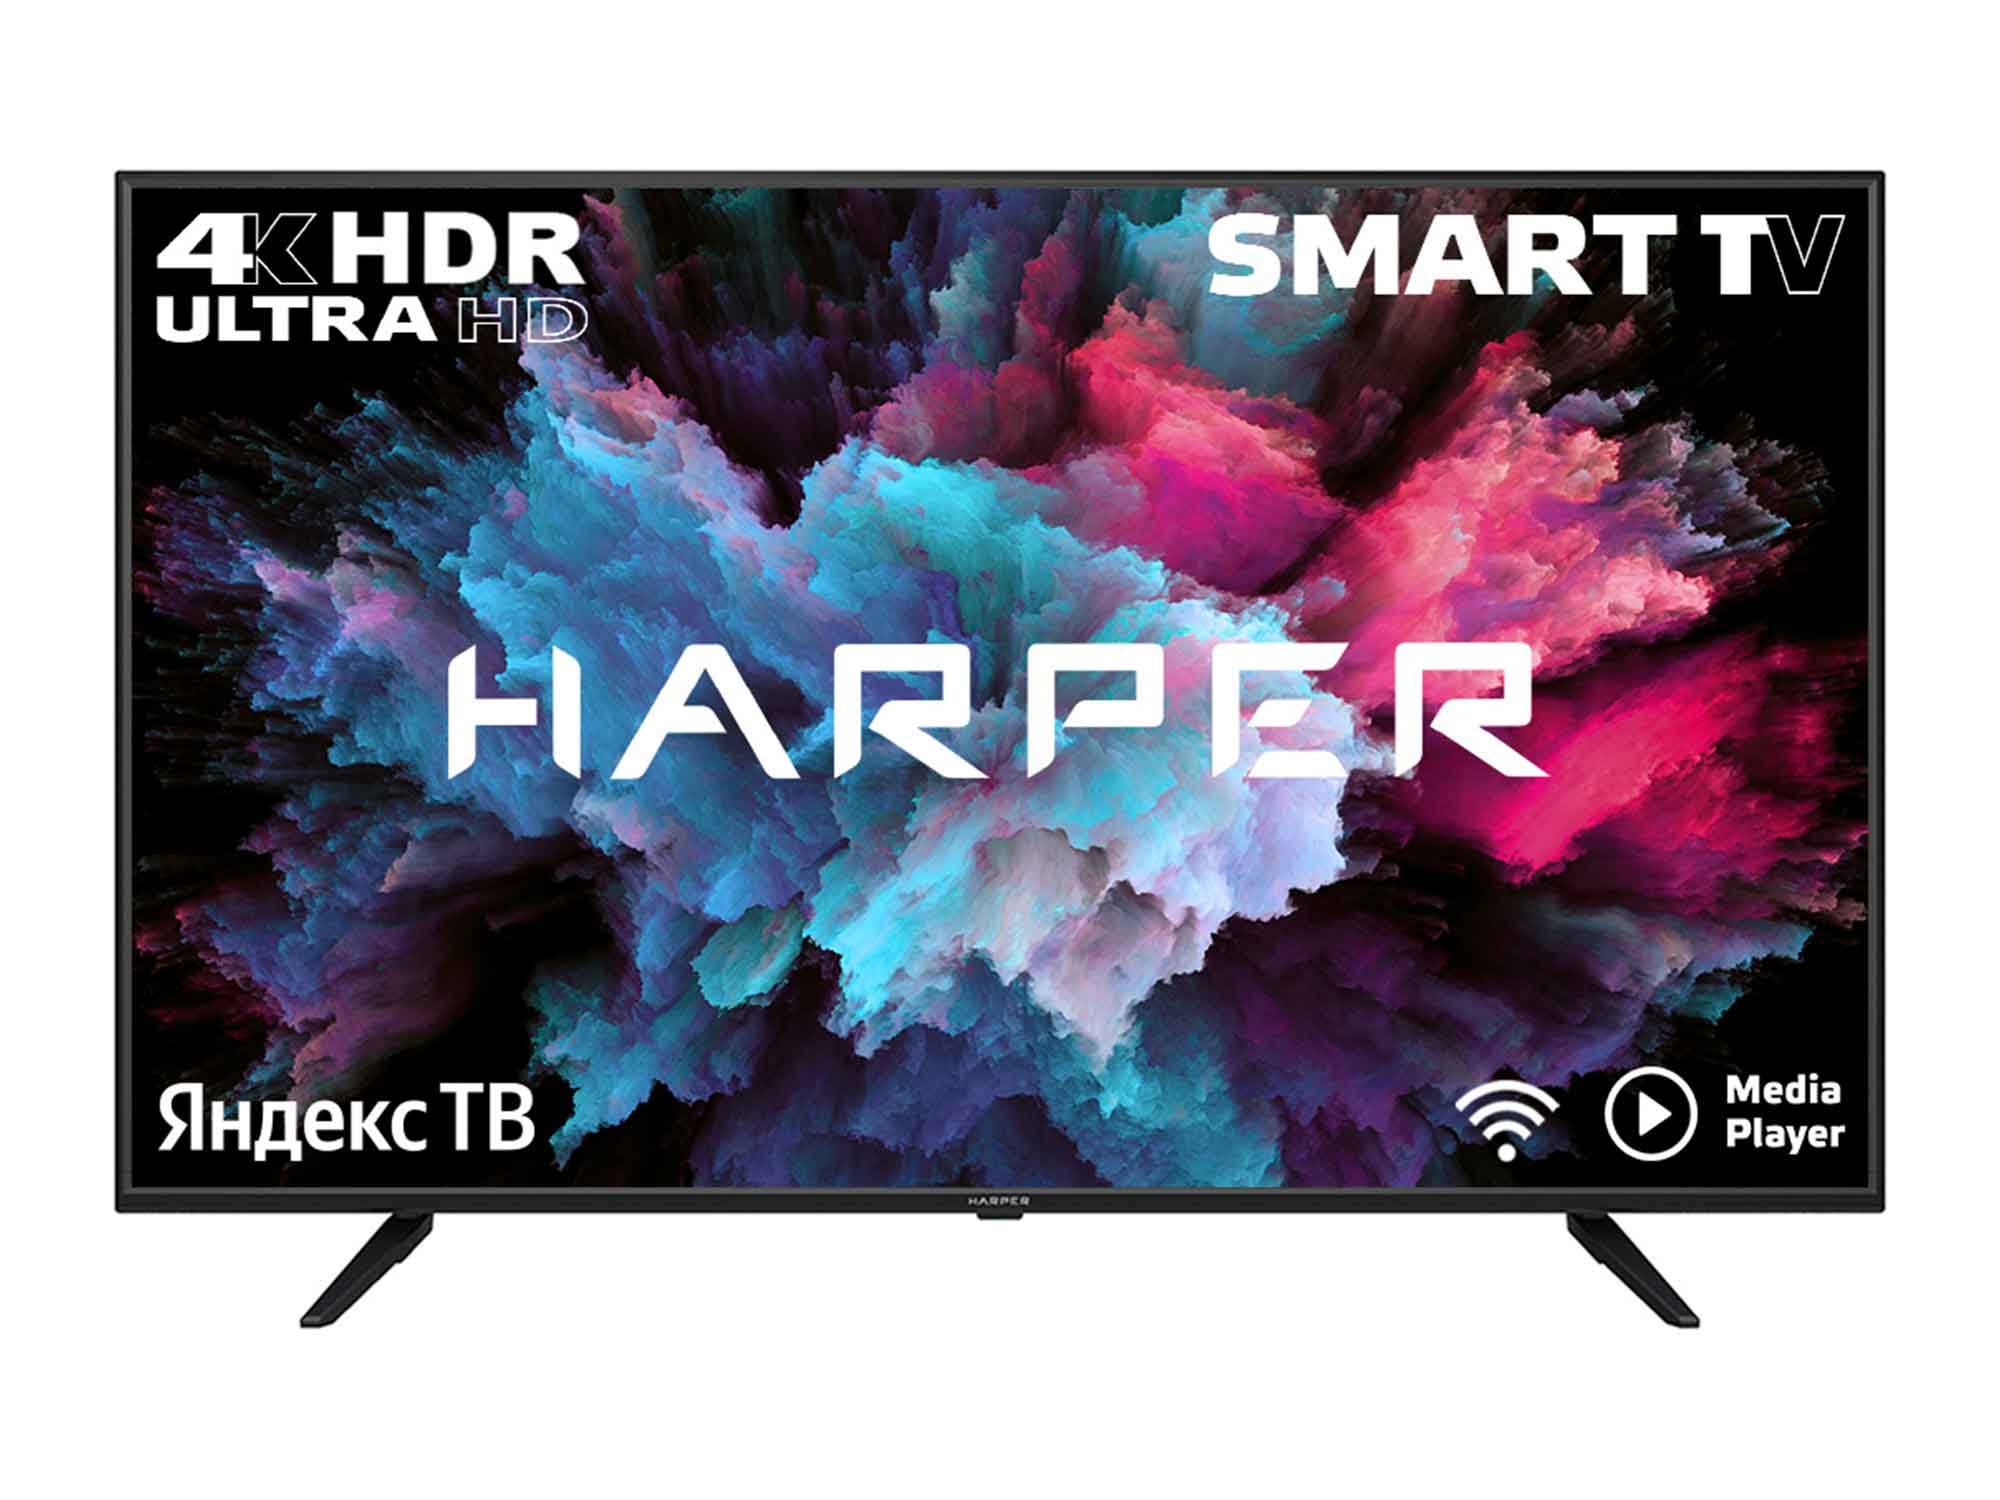 ტელევიზორი HARPER 65U660TS